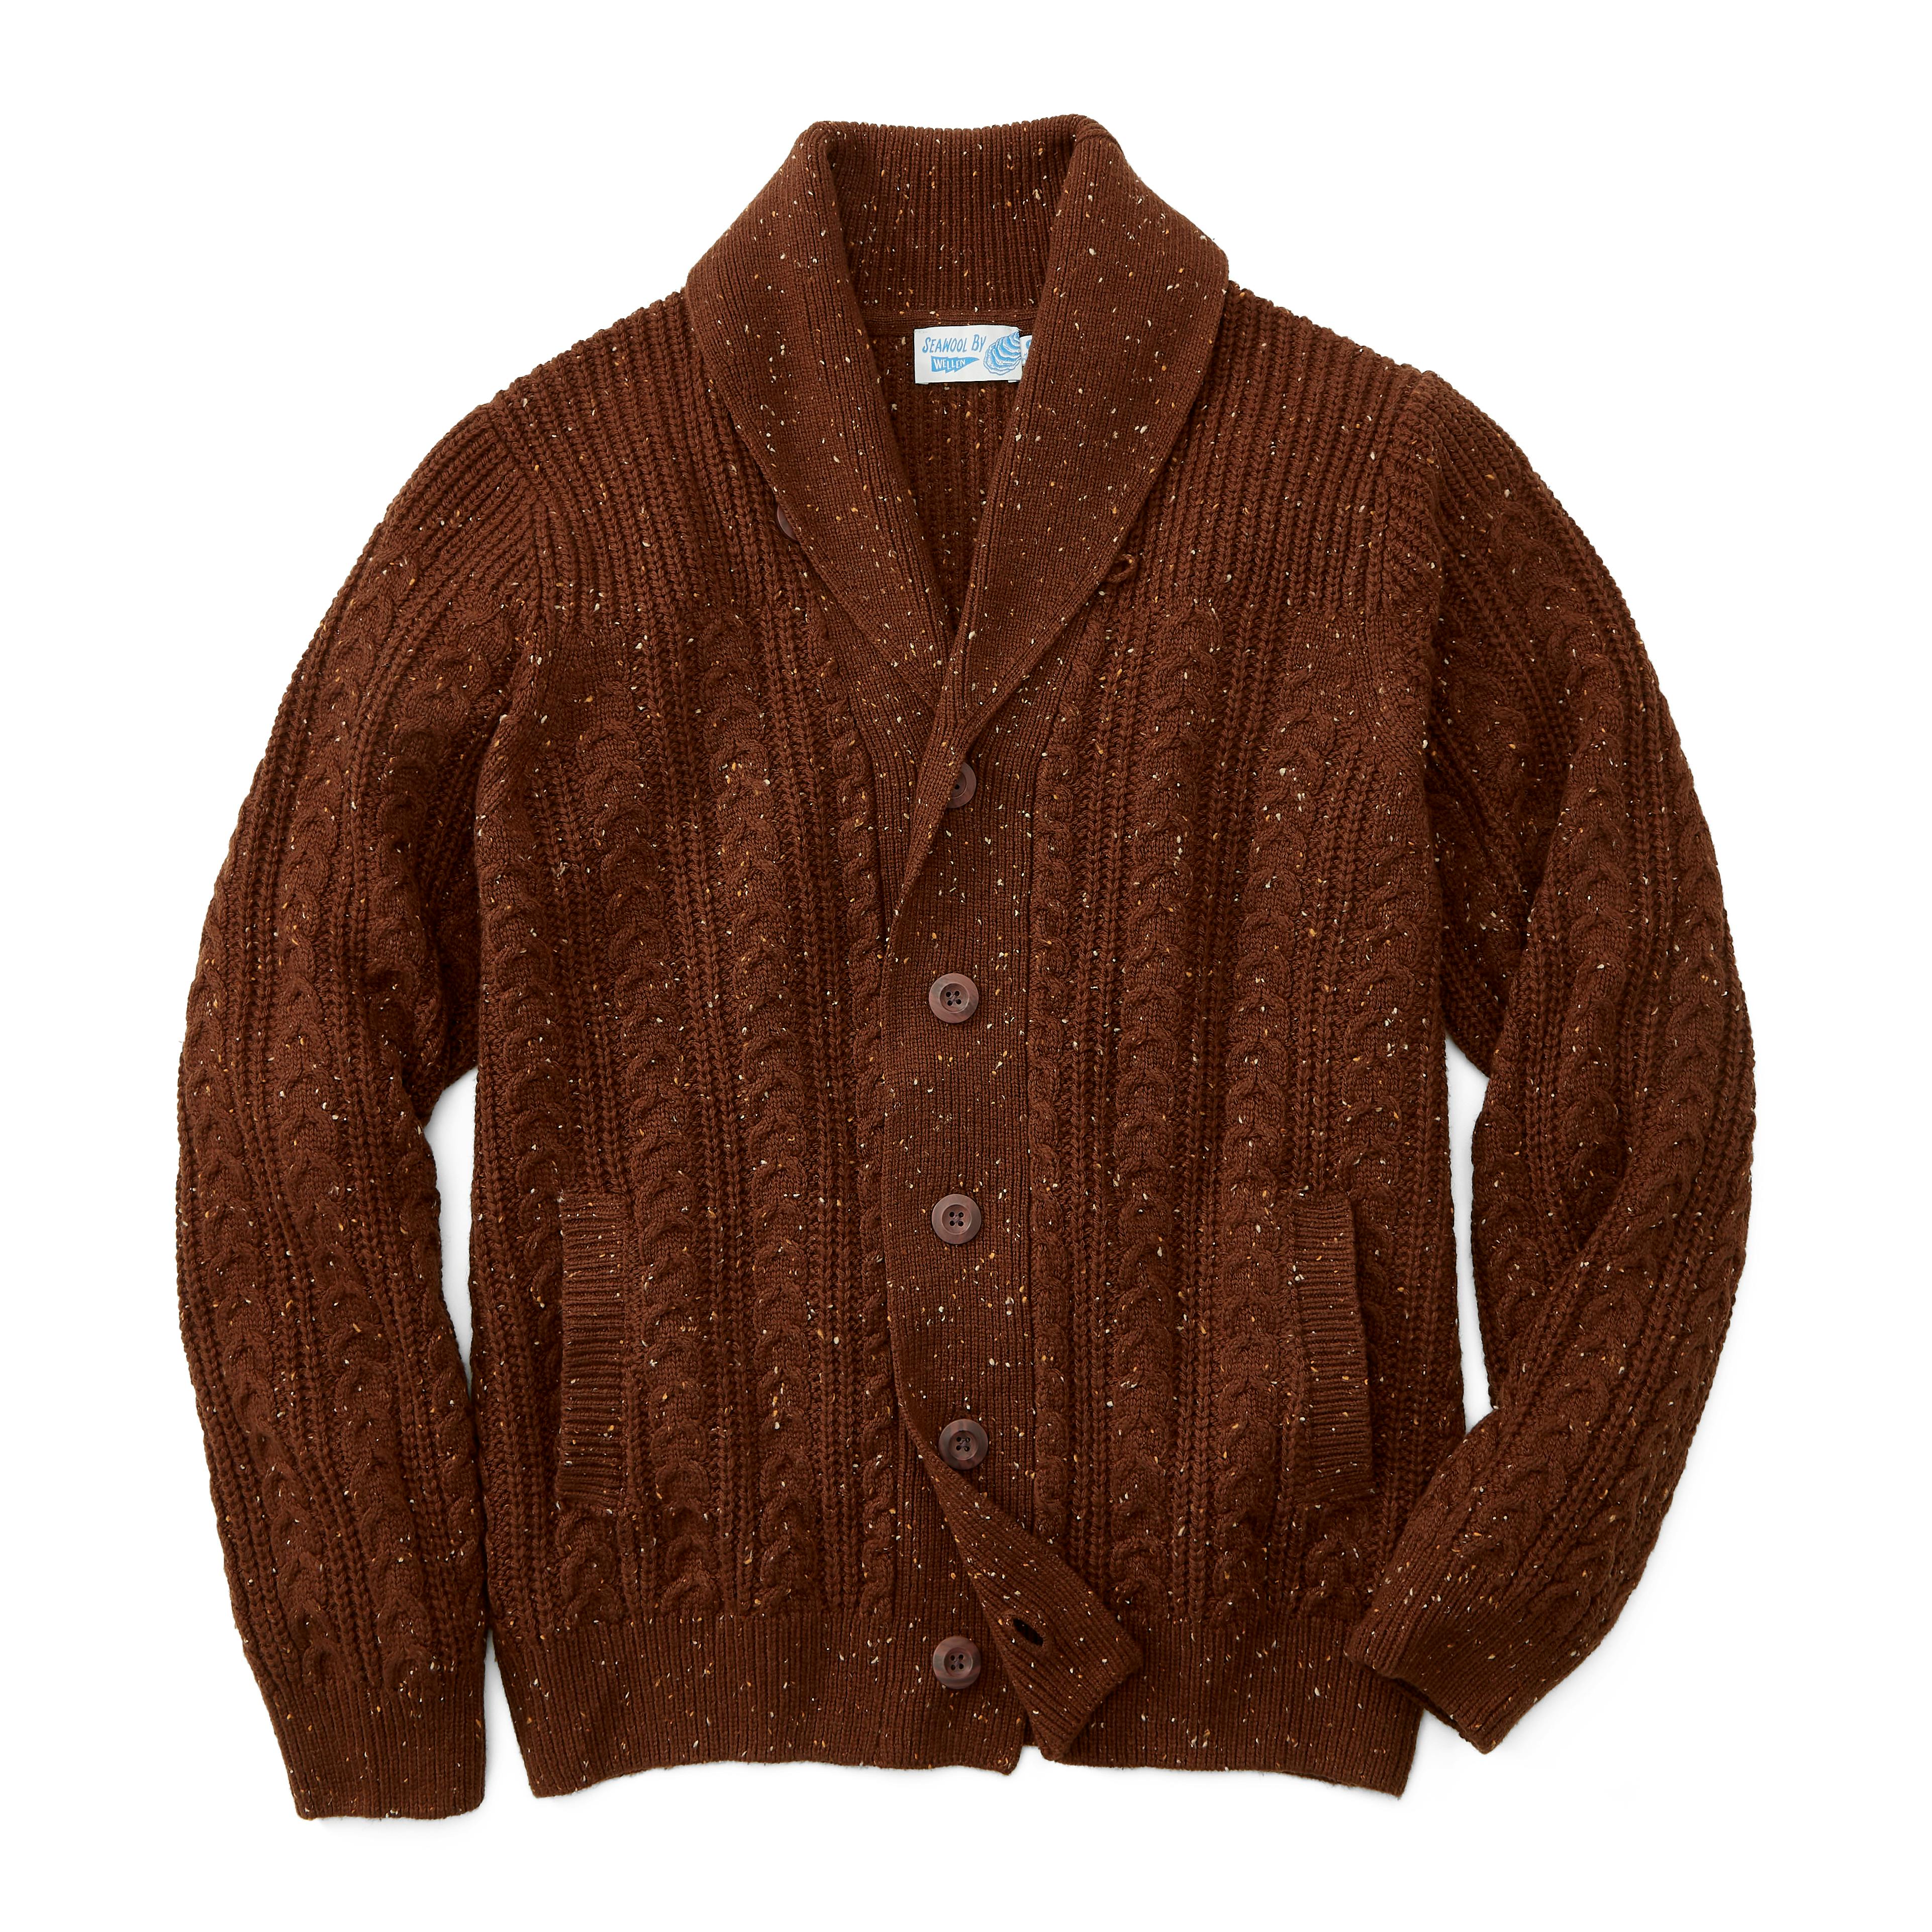 Seawool Fisherman Shawl Cardigan Sweater